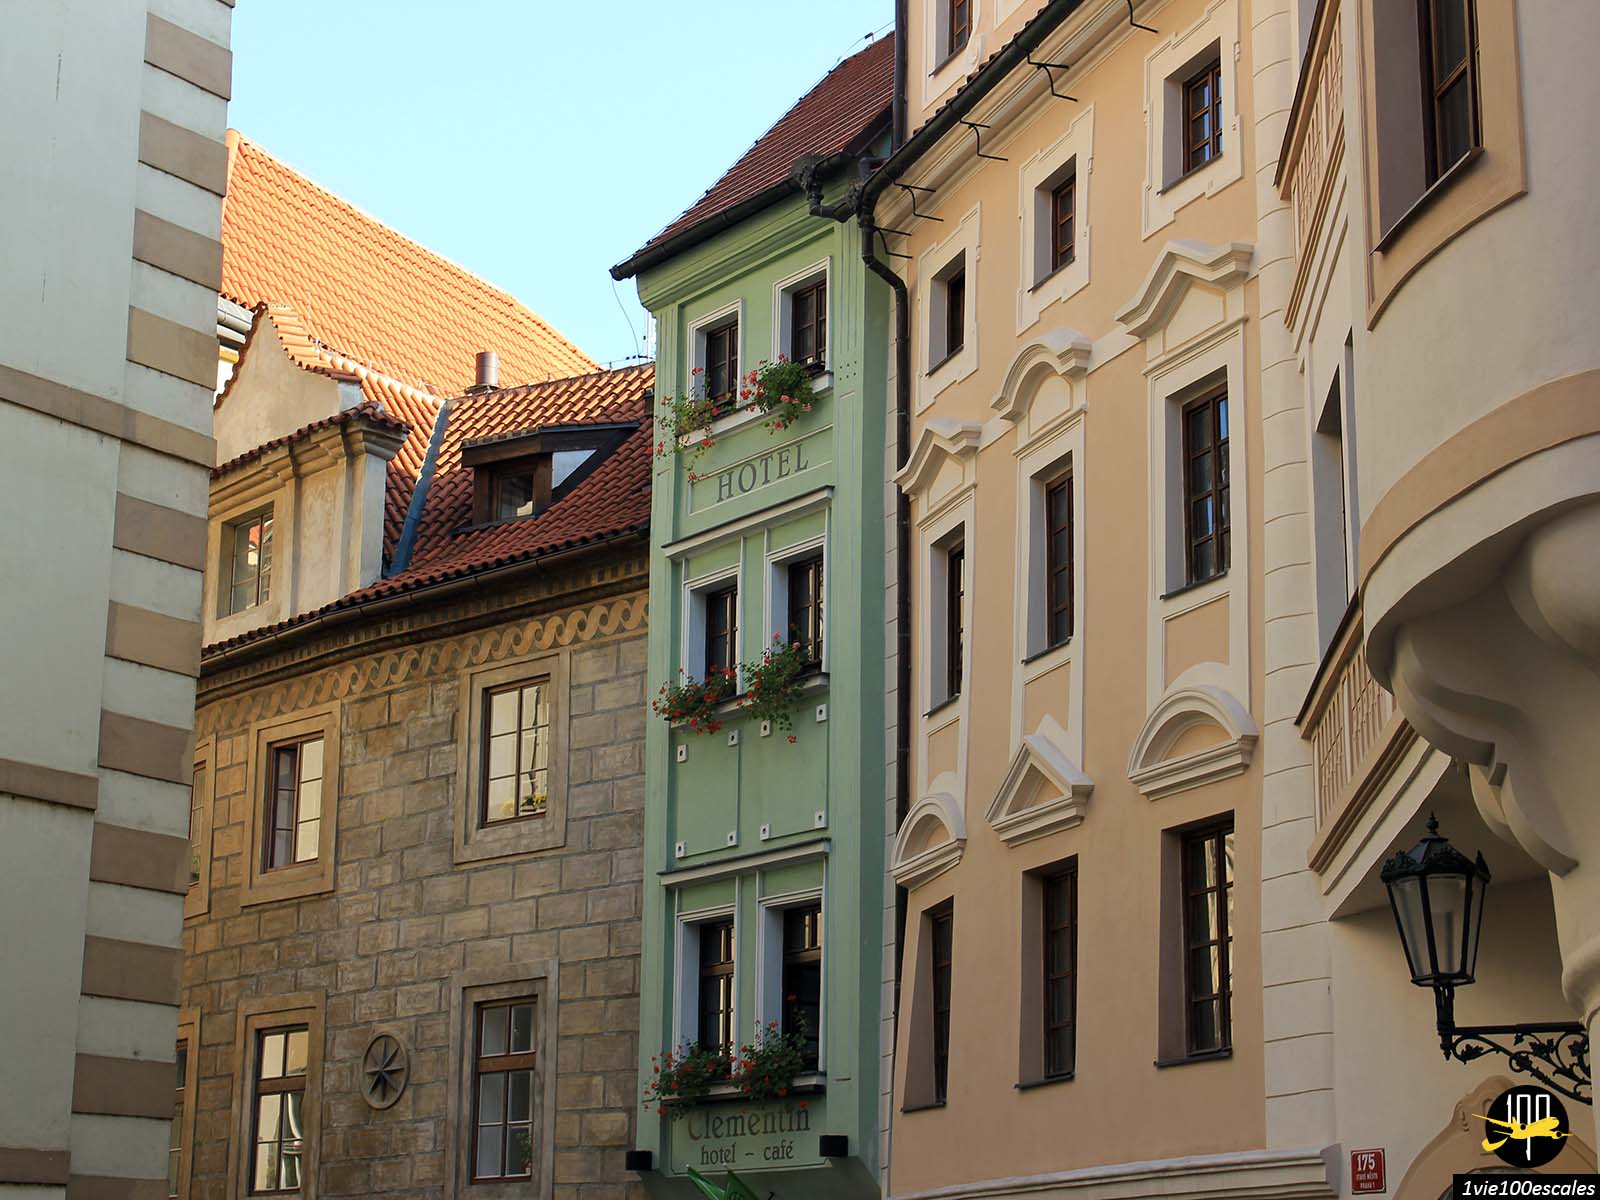 L'Hôtel Clementin se distingue par sa petite largeur (3,28 m) qui fait de lui l'immeuble le plus étroit de toute la ville de Prague